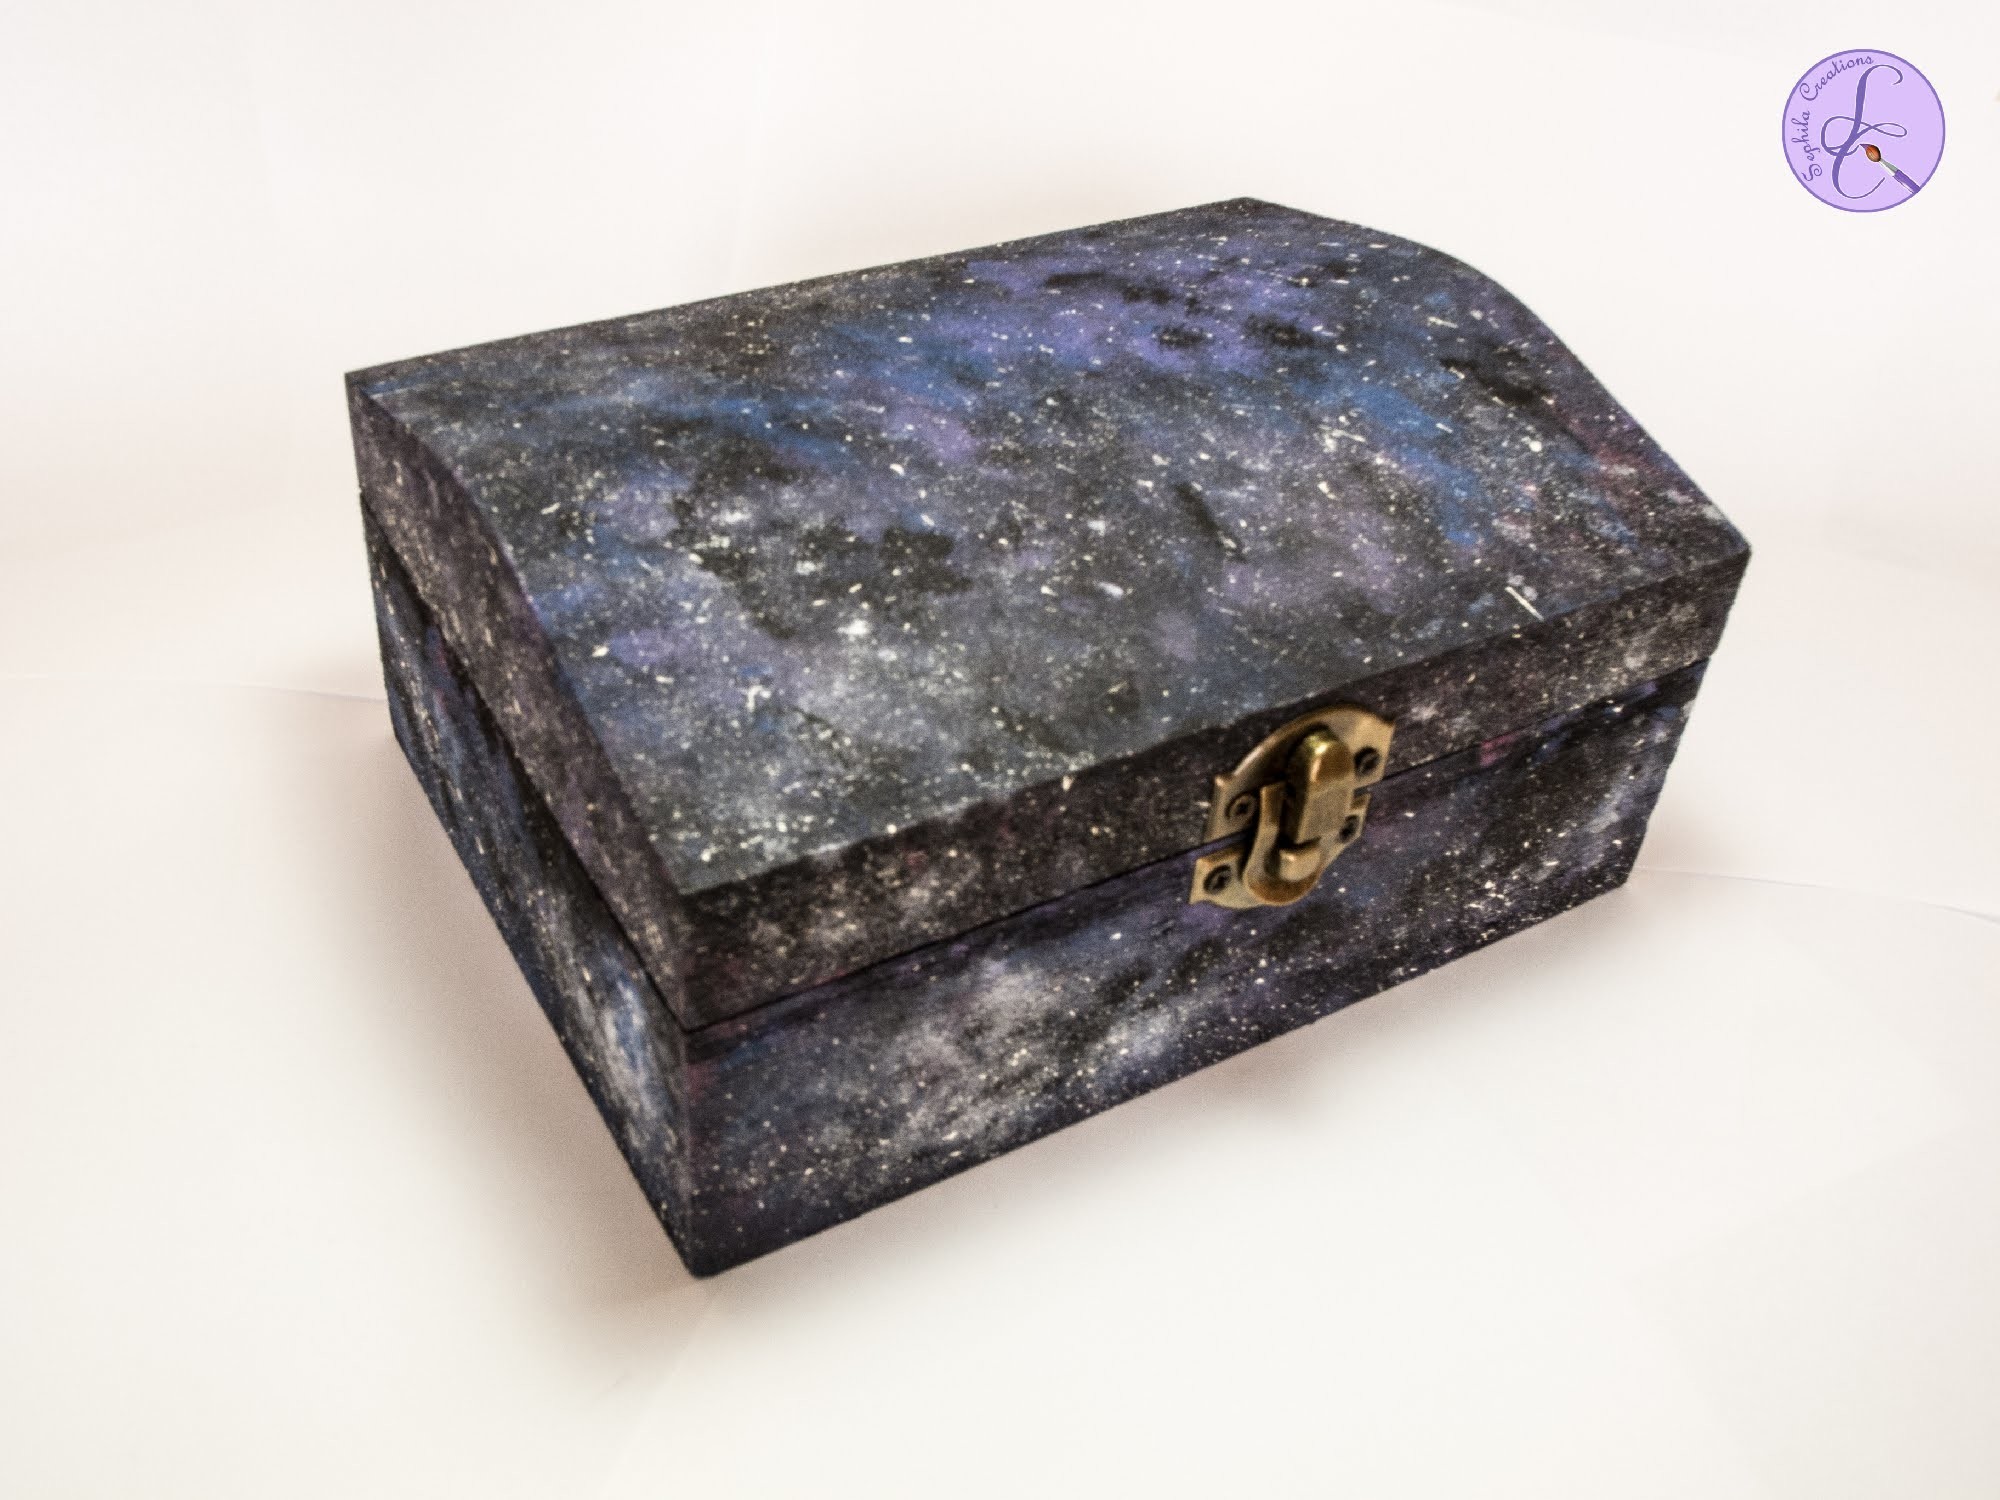 Tutorial: Scatola di Legno Effetto Galassia (galaxy wooden box)